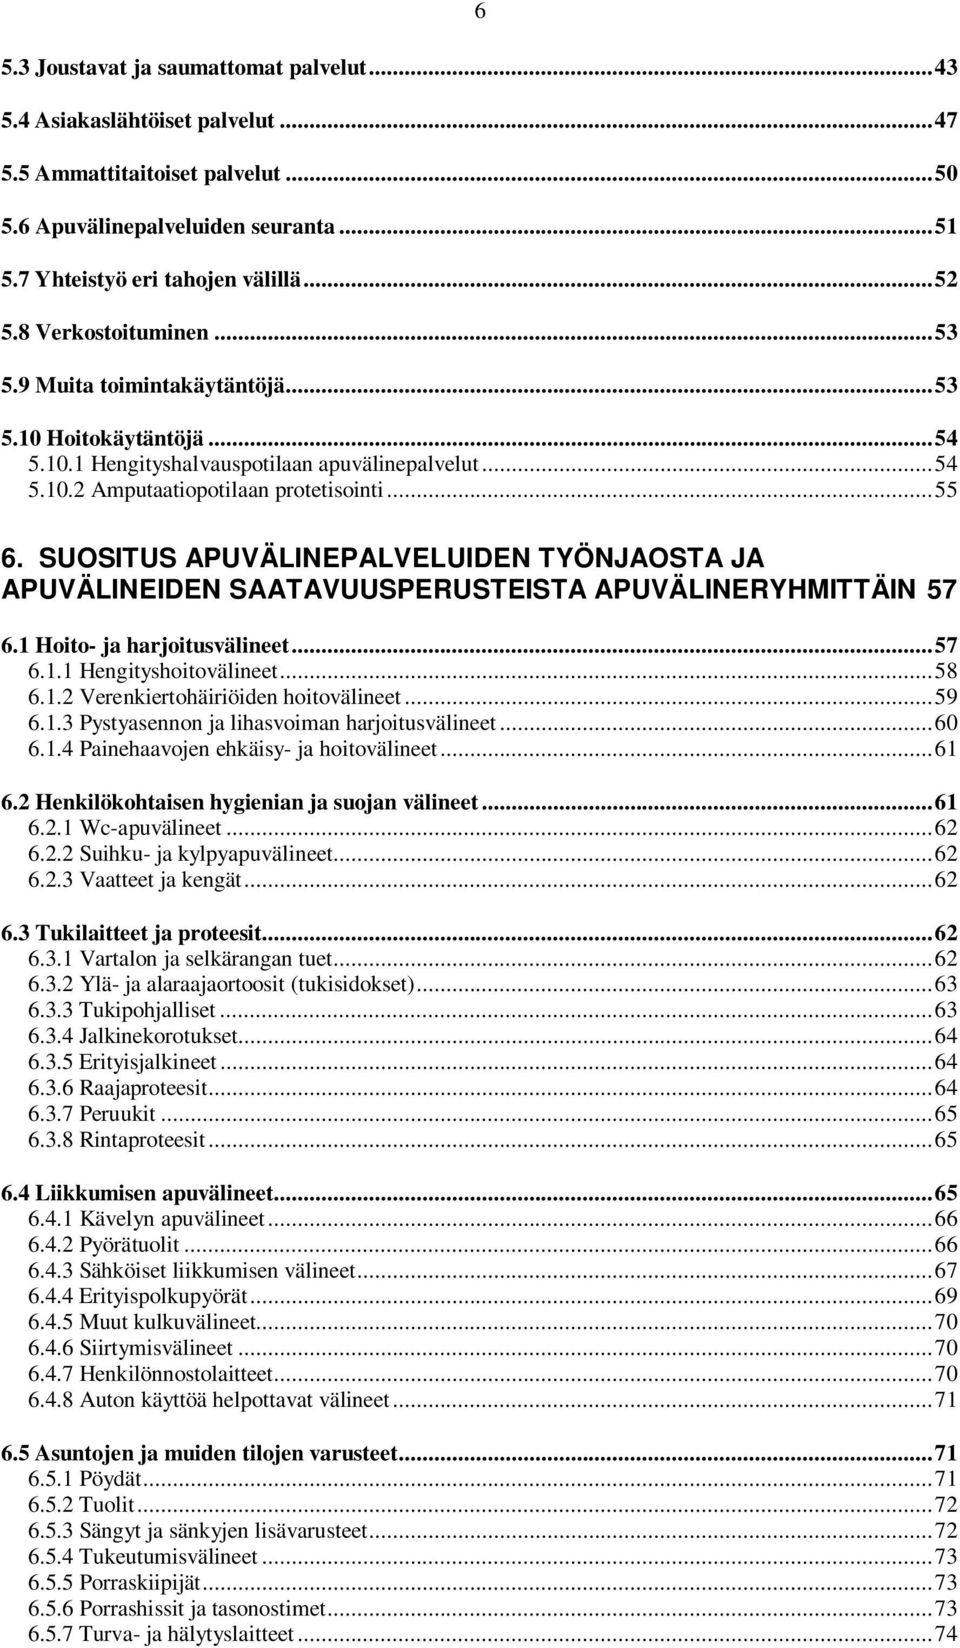 SUOSITUS APUVÄLINEPALVELUIDEN TYÖNJAOSTA JA APUVÄLINEIDEN SAATAVUUSPERUSTEISTA APUVÄLINERYHMITTÄIN 57 6.1 Hoito- ja harjoitusvälineet... 57 6.1.1 Hengityshoitovälineet... 58 6.1.2 Verenkiertohäiriöiden hoitovälineet.